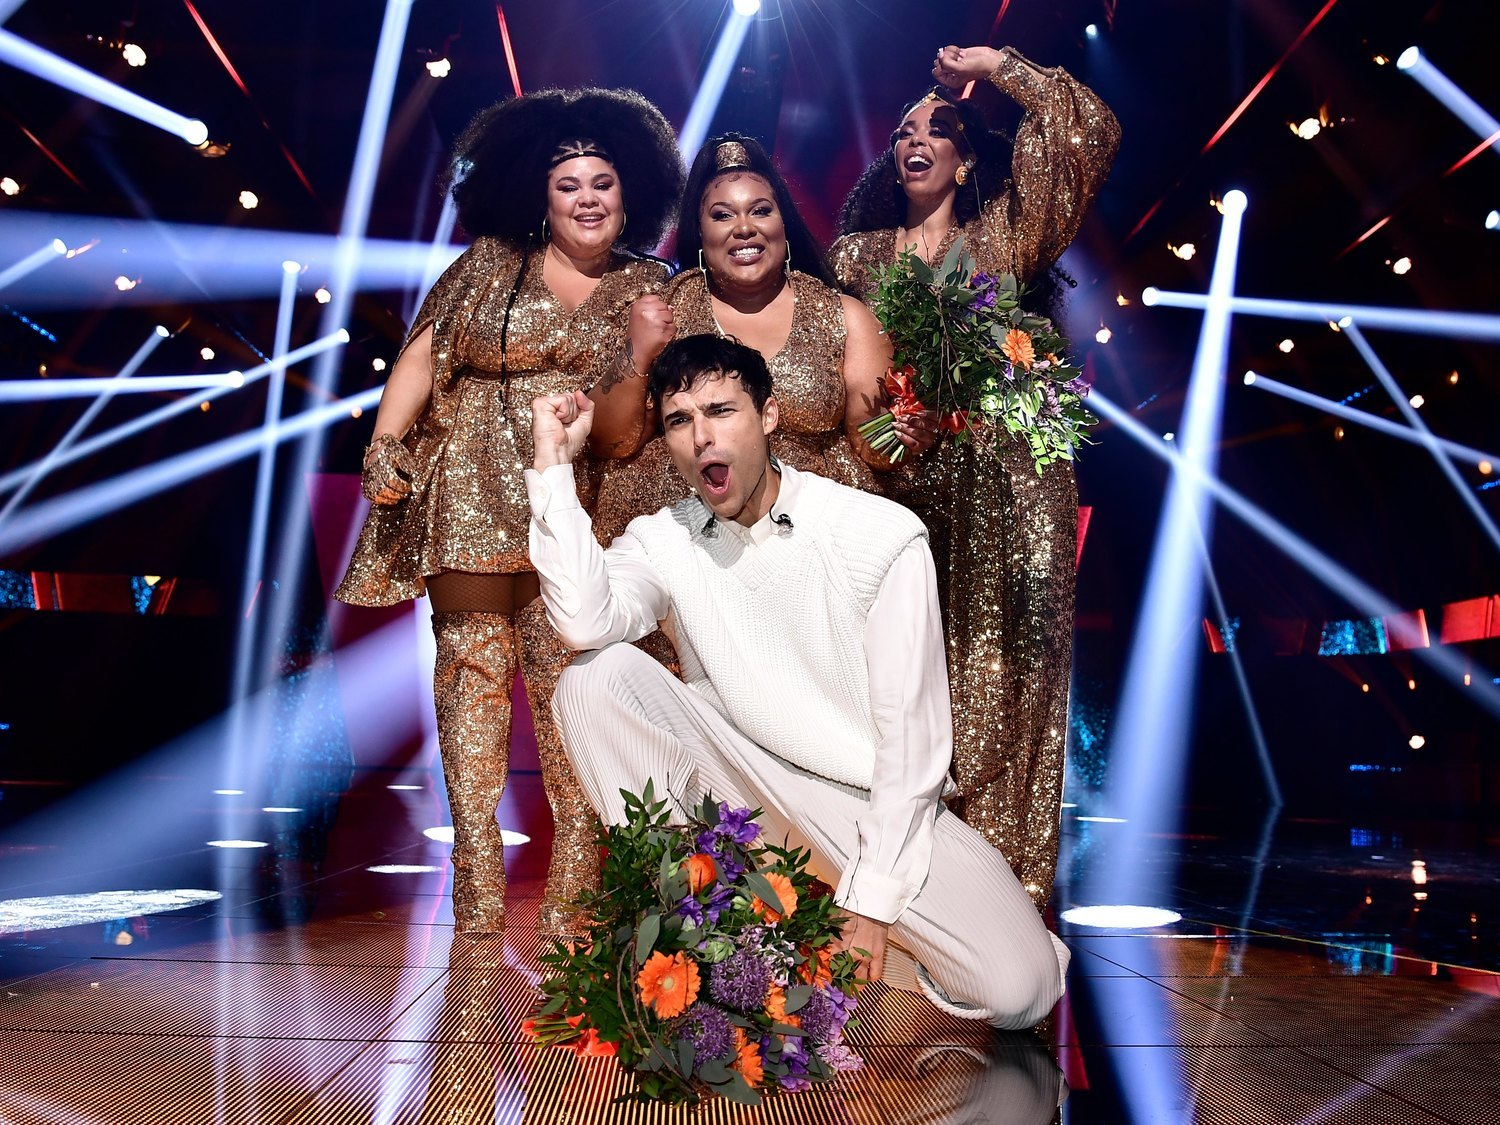 Llega el 'Andra Chansen' del Melodifestivalen 2021, con Eric Saade y The Mamas en la gran final